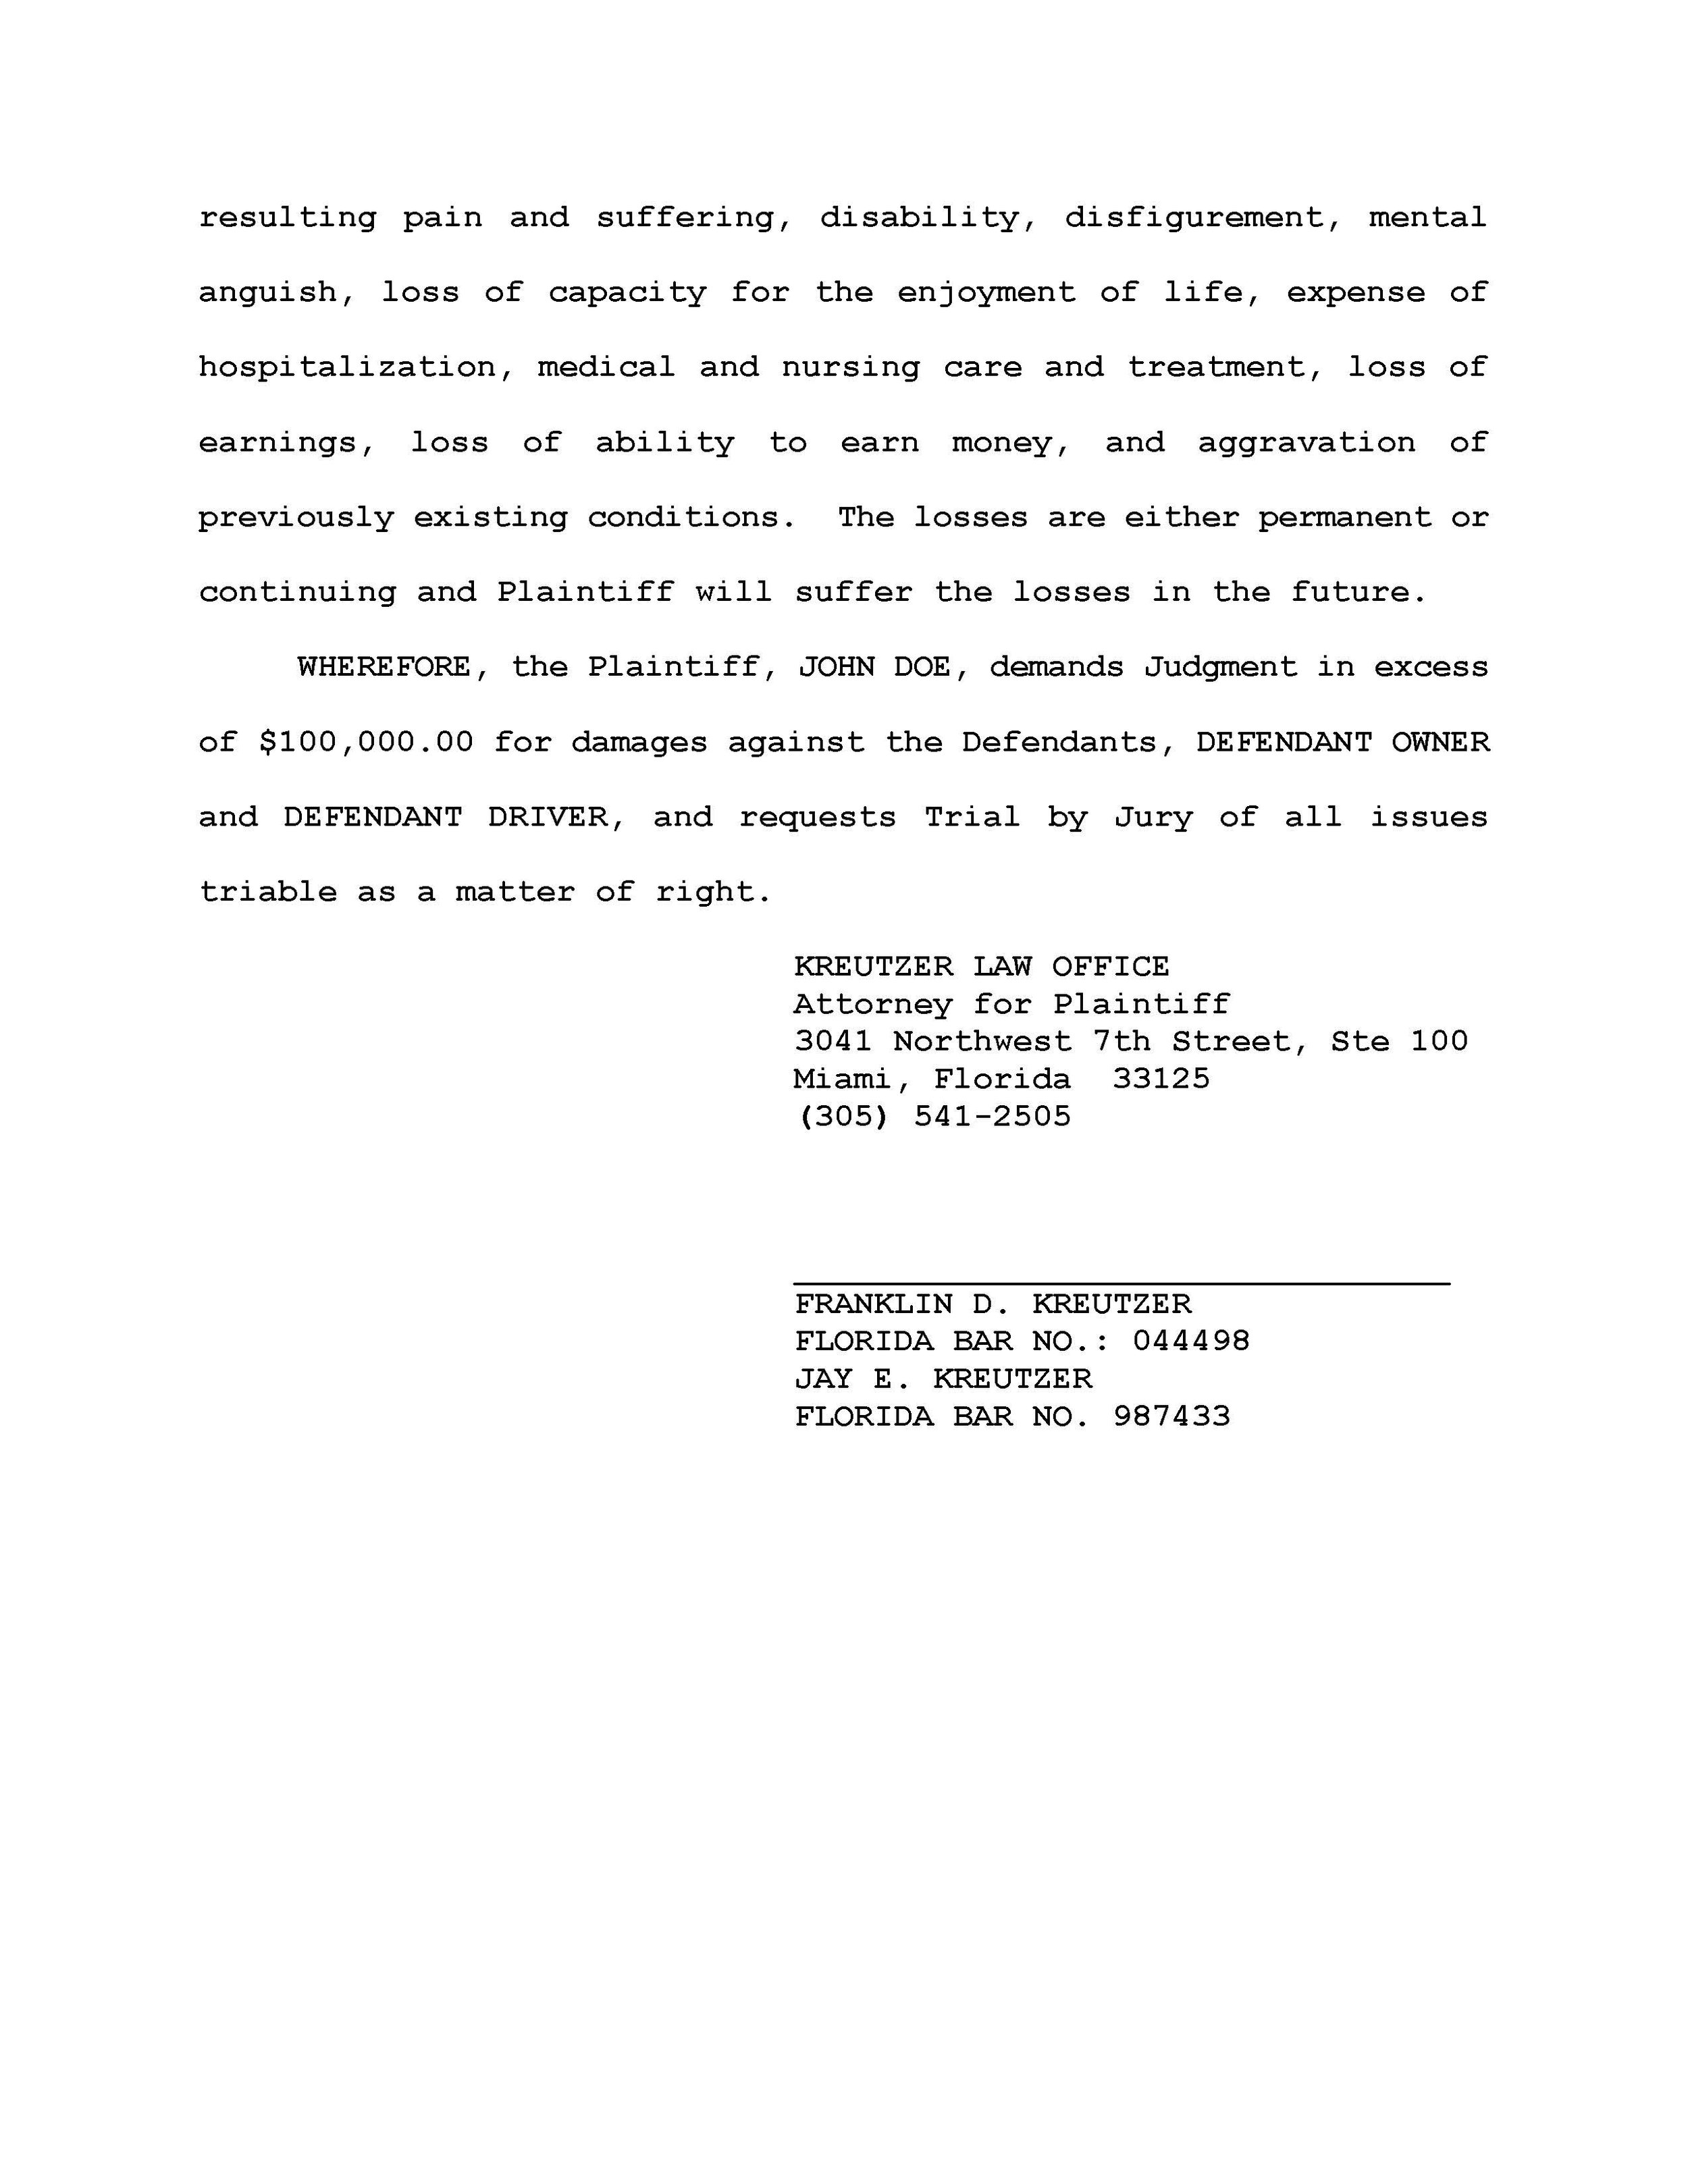 Kreutzer-Law-Attorney-Miami-Lawyers-Complaint Auto.neg_Page_2.jpg